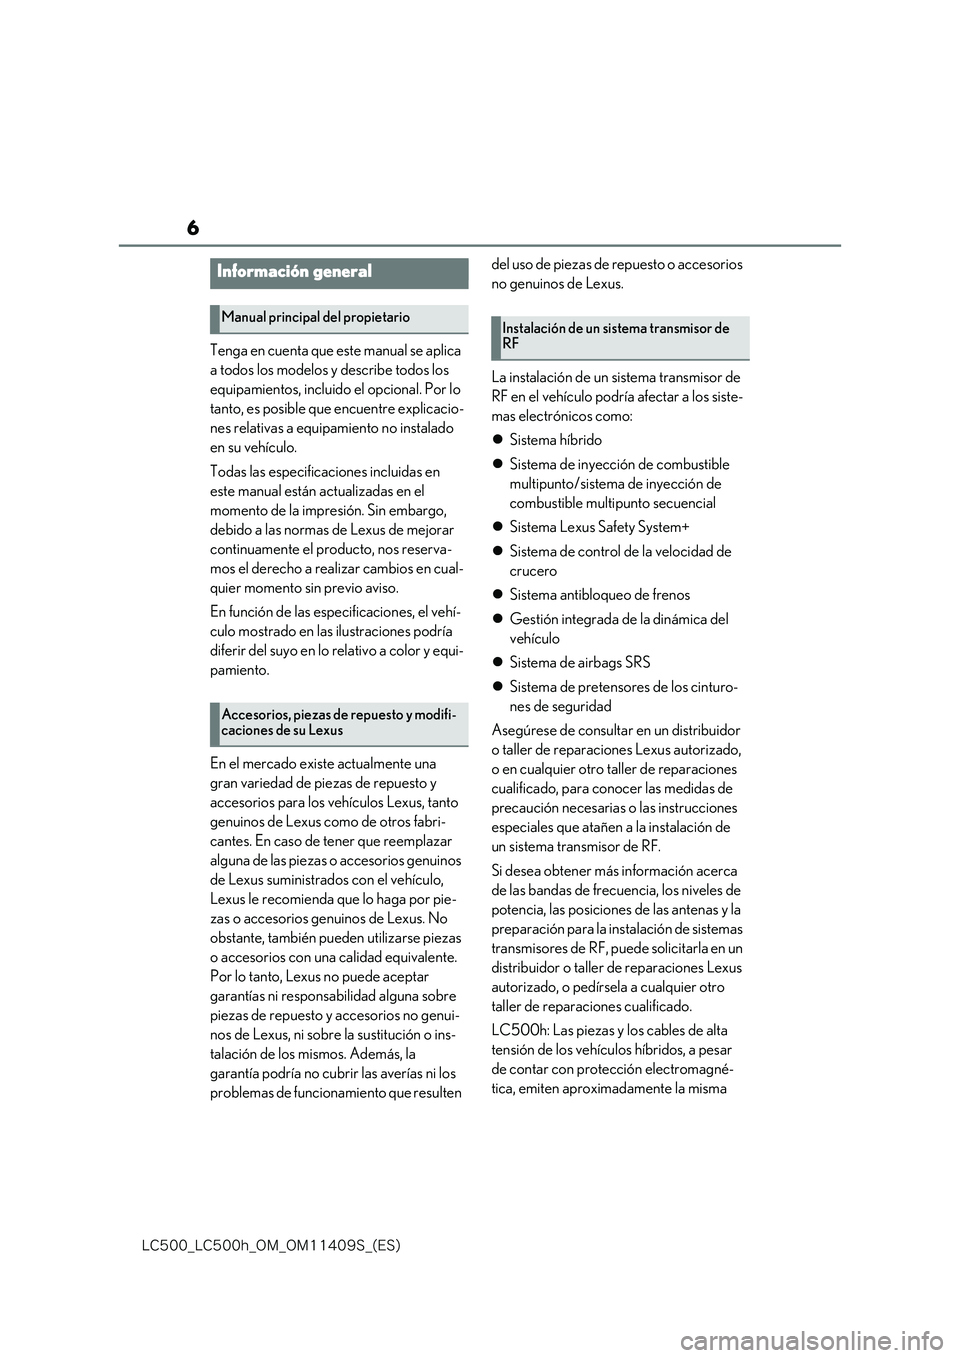 lexus LC500h 2018  Manual del propietario (in Spanish) 6
�-�$����@�-�$����I�@�0�.�@�0�.������4�@�	�&�4�

Tenga en cuenta que este manual se aplica  
a todos los modelos y describe todos los 
equipamientos, incluido el opcional. Por lo 
tanto, e